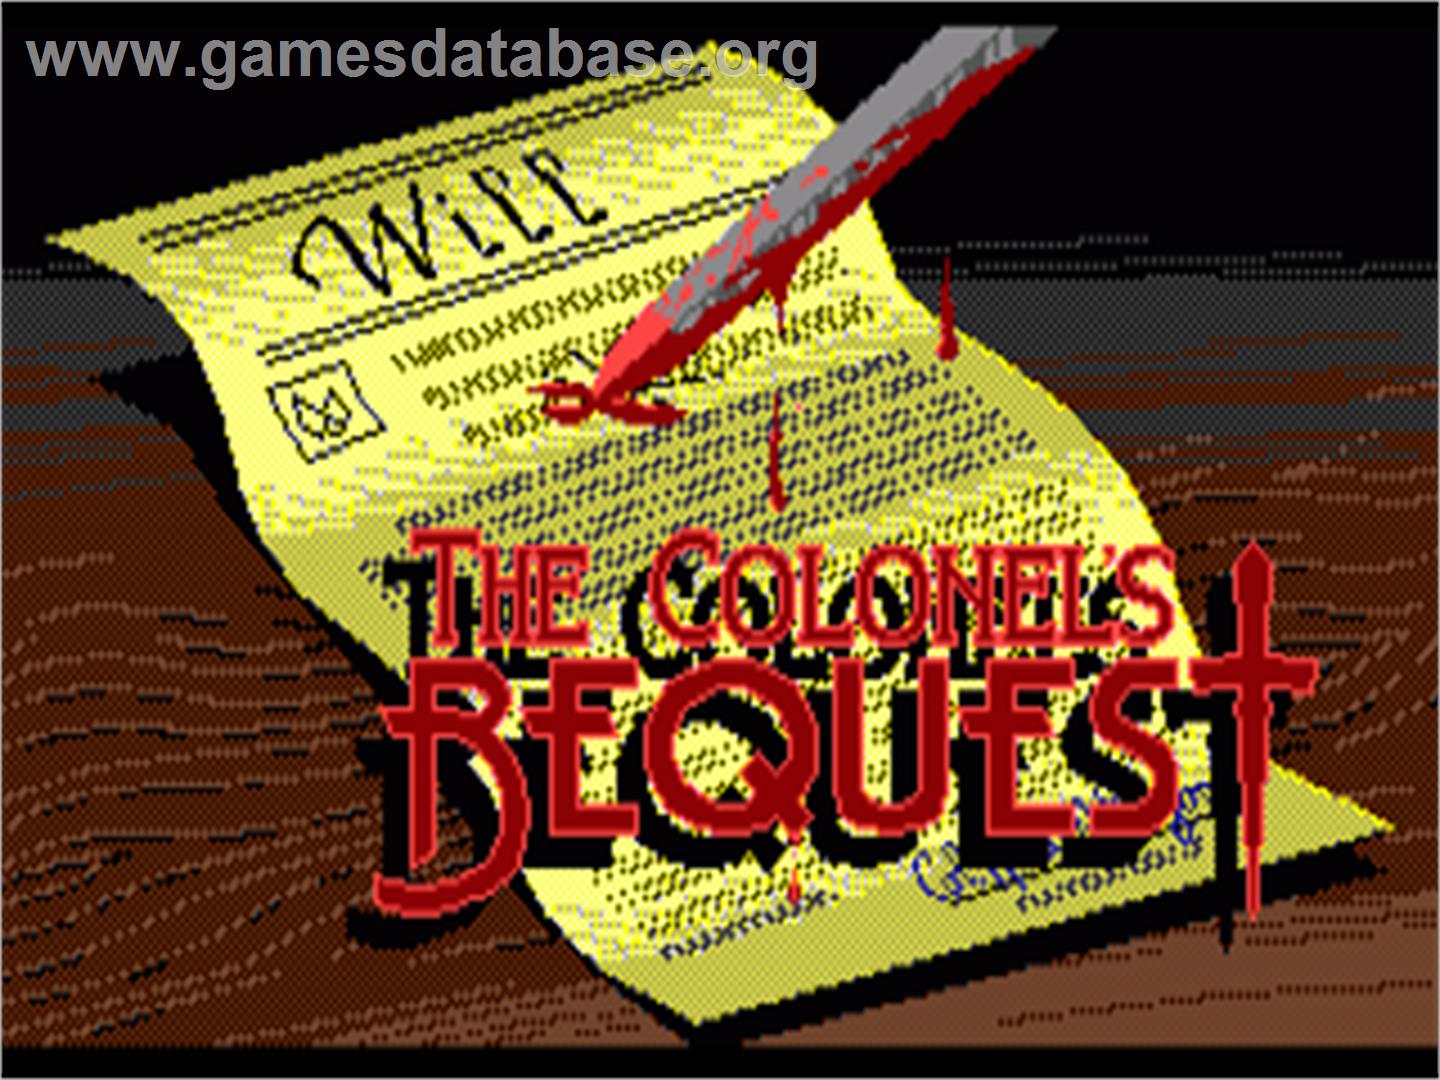 Colonel's Bequest - Commodore Amiga - Artwork - Title Screen